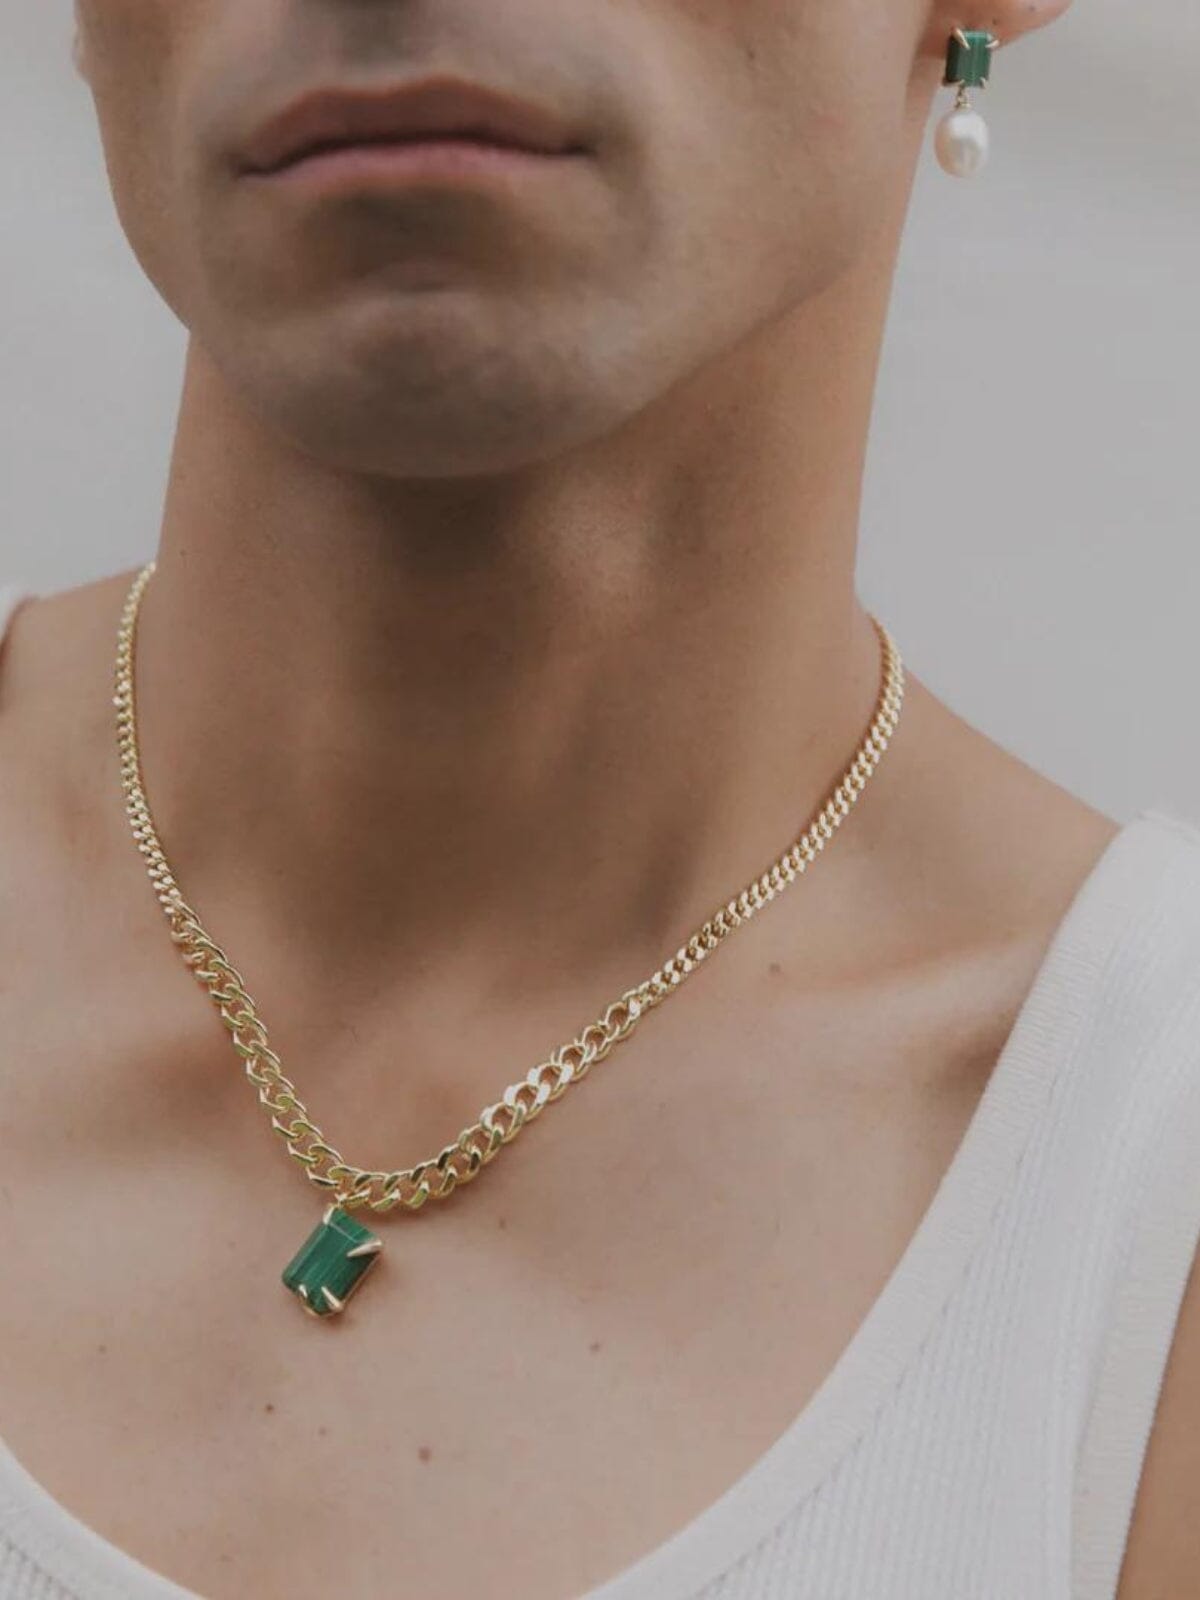 Fierce Pendant Necklace: Brass + 18K Gold Plating + Malachite